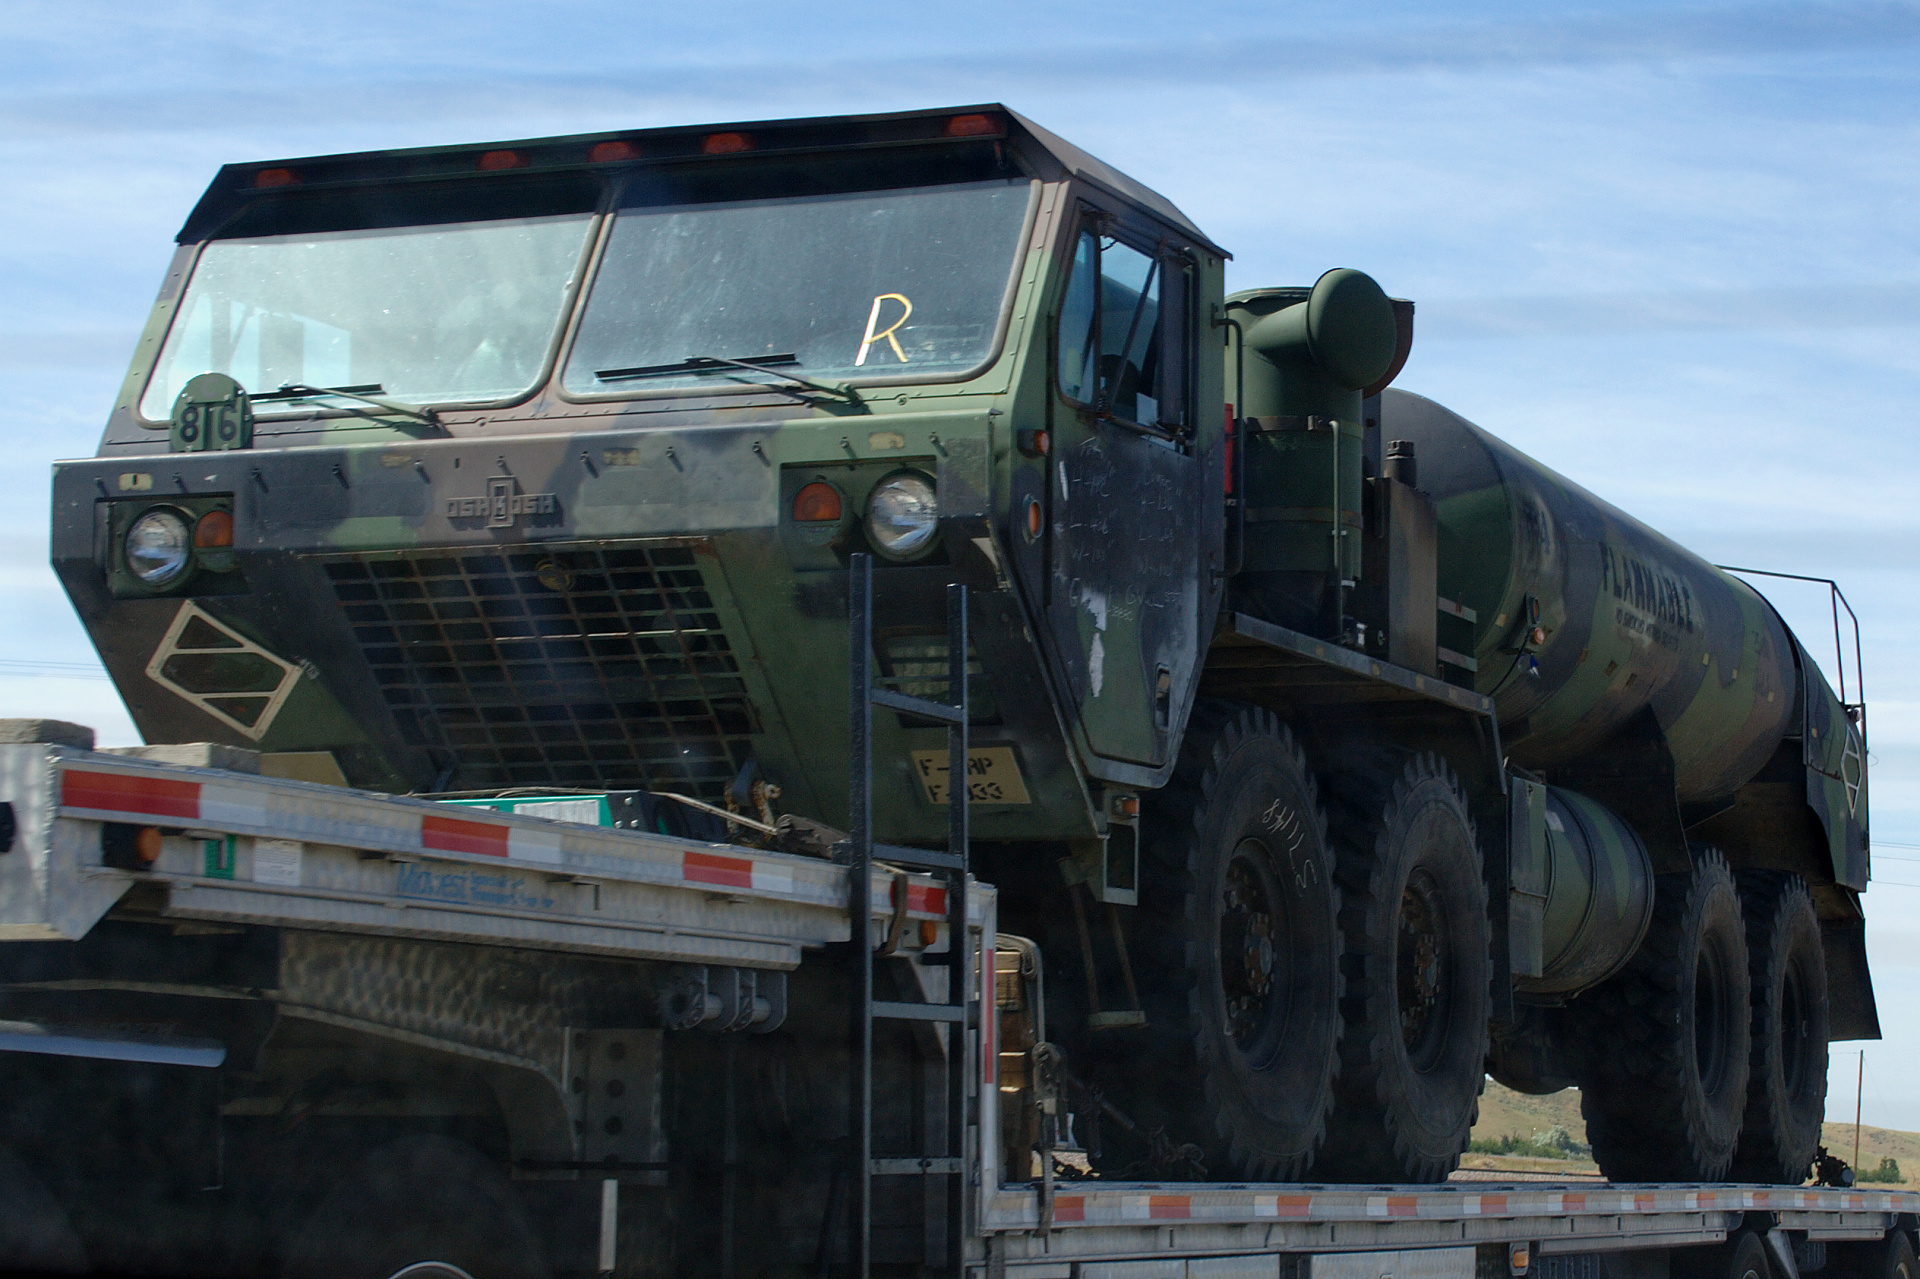 Oshkosh HEMTT M978 Tanker (Travels » US Trip 2: Cheyenne Epic » Vehicles)